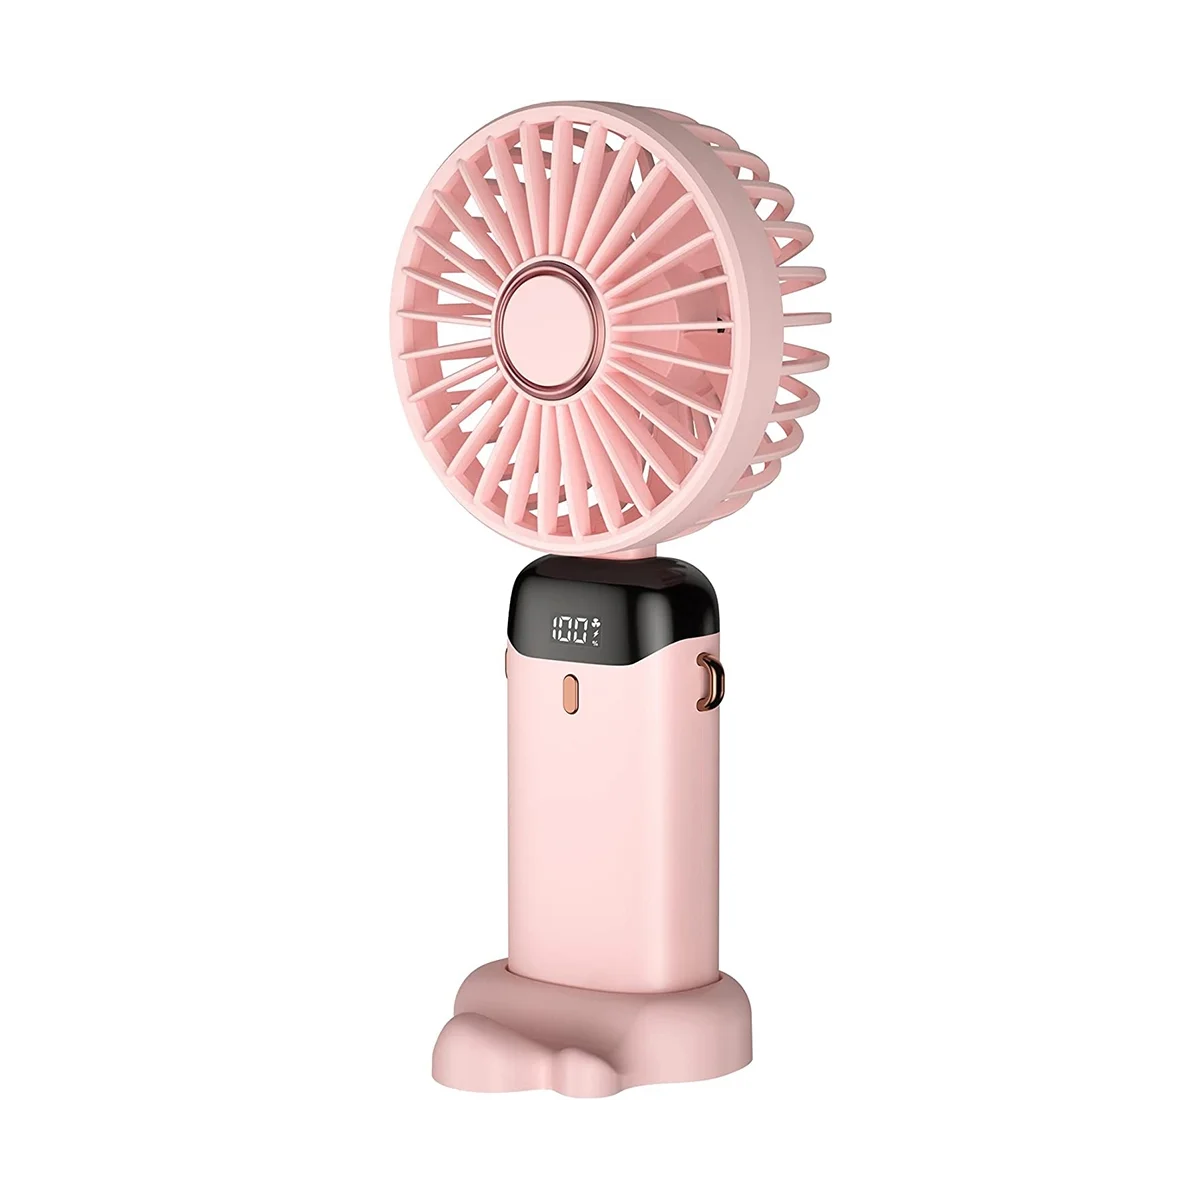 Ручной вентилятор, Мини портативный персональный вентилятор, перезаряжаемый через USB, Маленький карманный вентилятор с ремешком и основанием, 5 скоростей (розовый)5